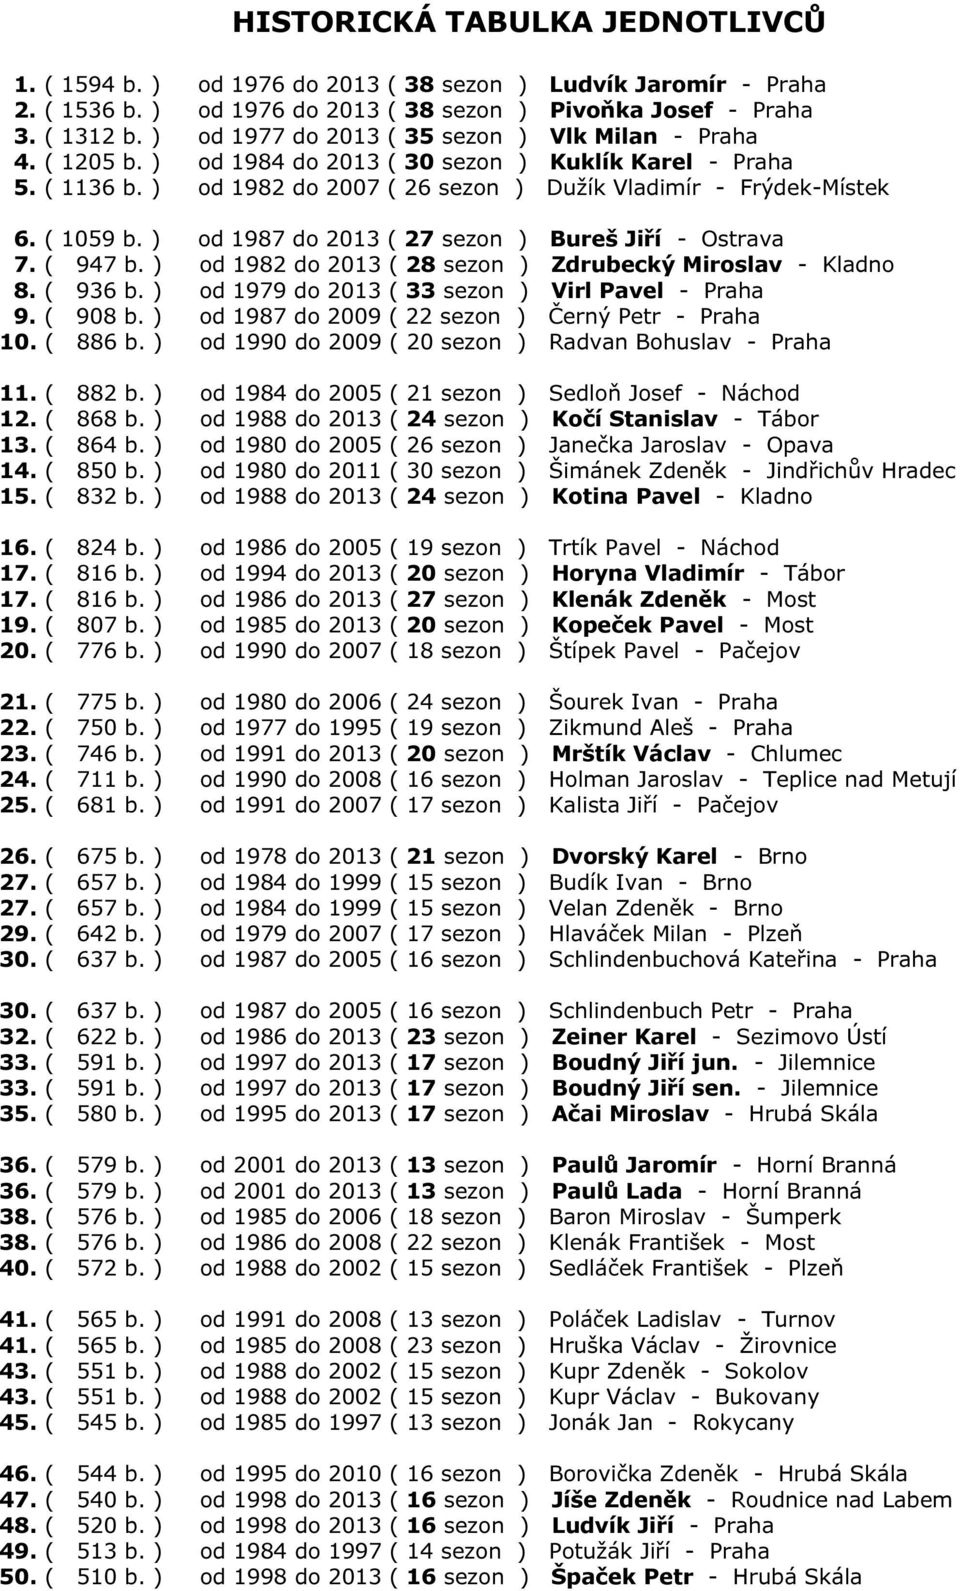 ( 1059 b. ) od 1987 do 2013 ( 27 sezon ) Bureš Jiří - Ostrava 7. ( 947 b. ) od 1982 do 2013 ( 28 sezon ) Zdrubecký Miroslav - Kladno 8. ( 936 b. ) od 1979 do 2013 ( 33 sezon ) Virl Pavel - Praha 9.